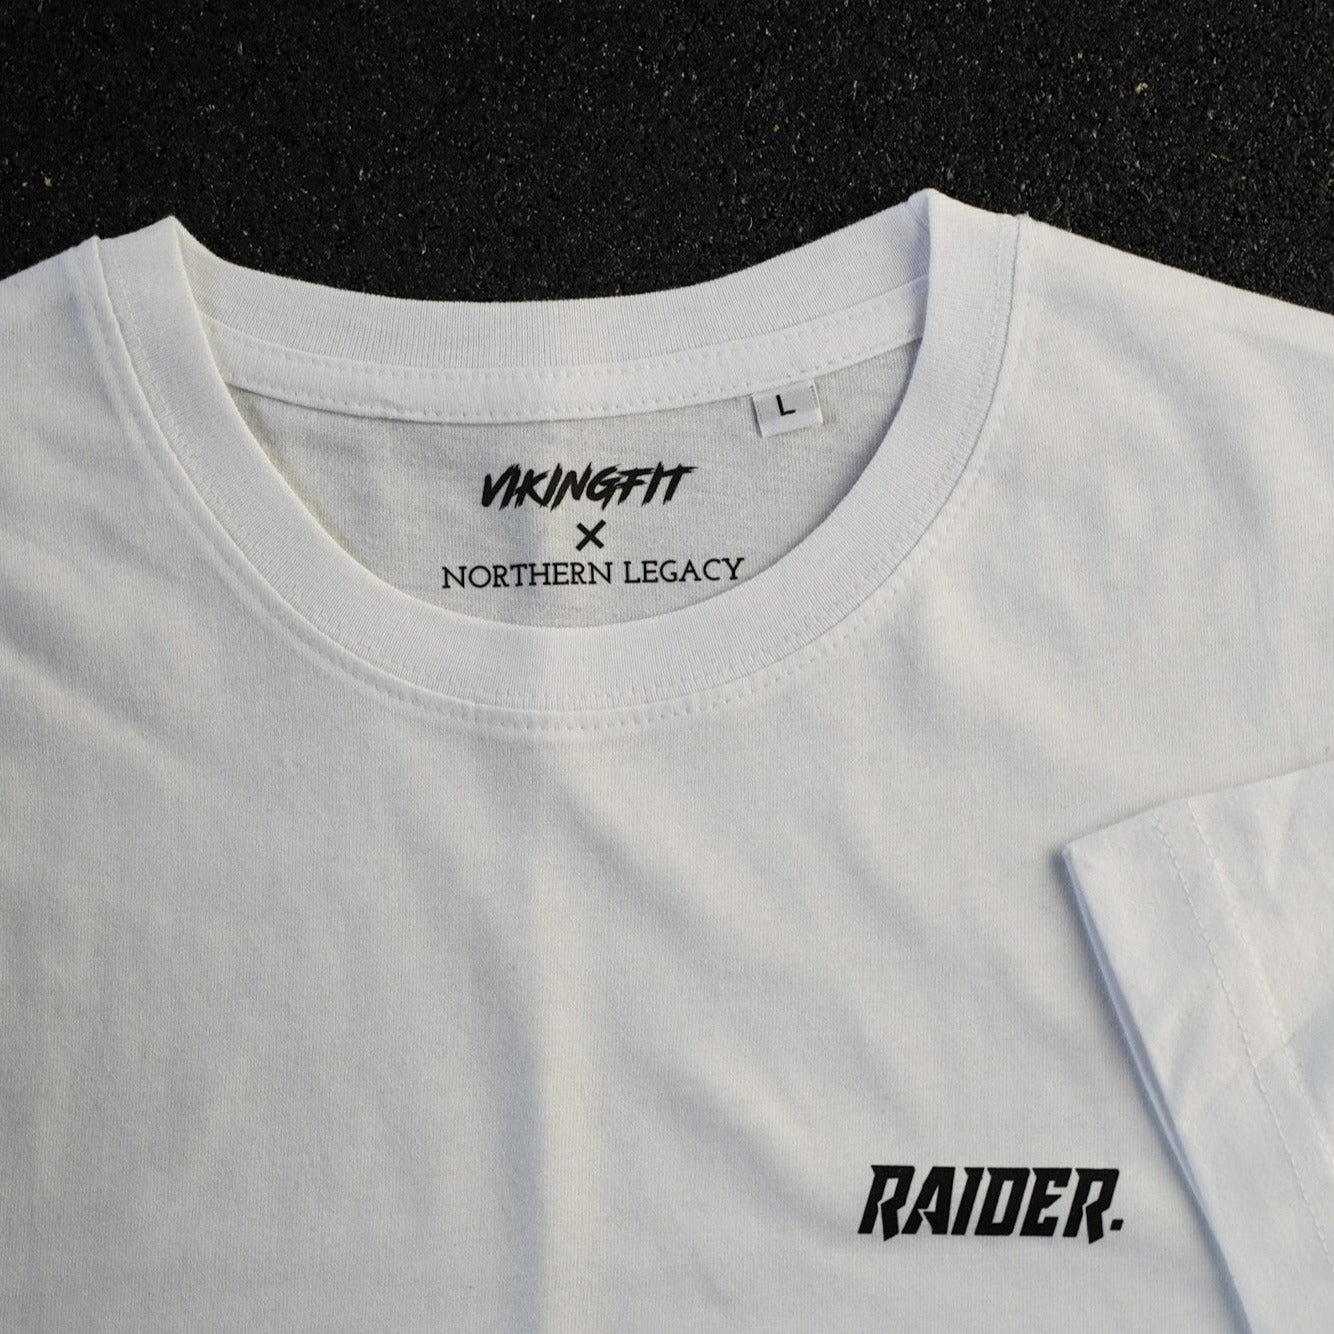 RAIDER. T-Shirt - White